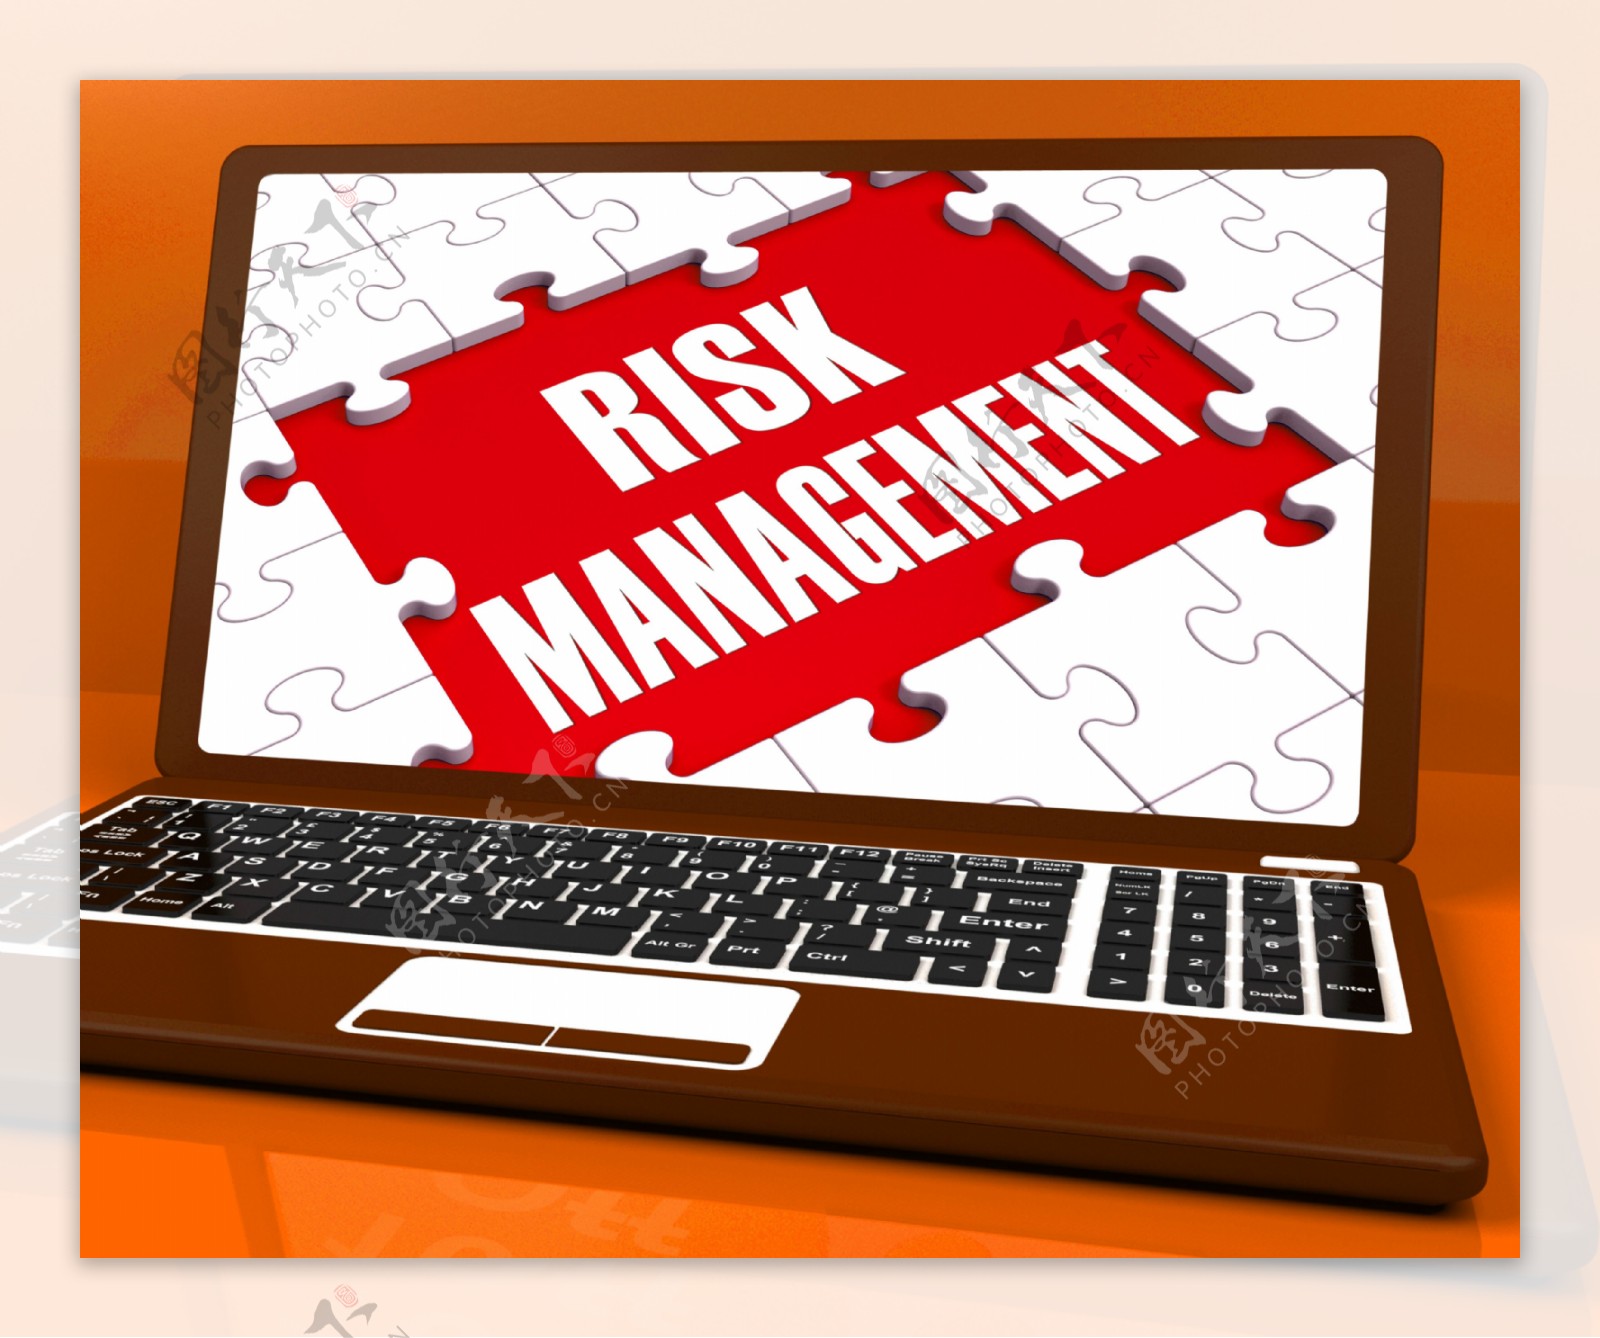 笔记本电脑显示风险分析风险管理